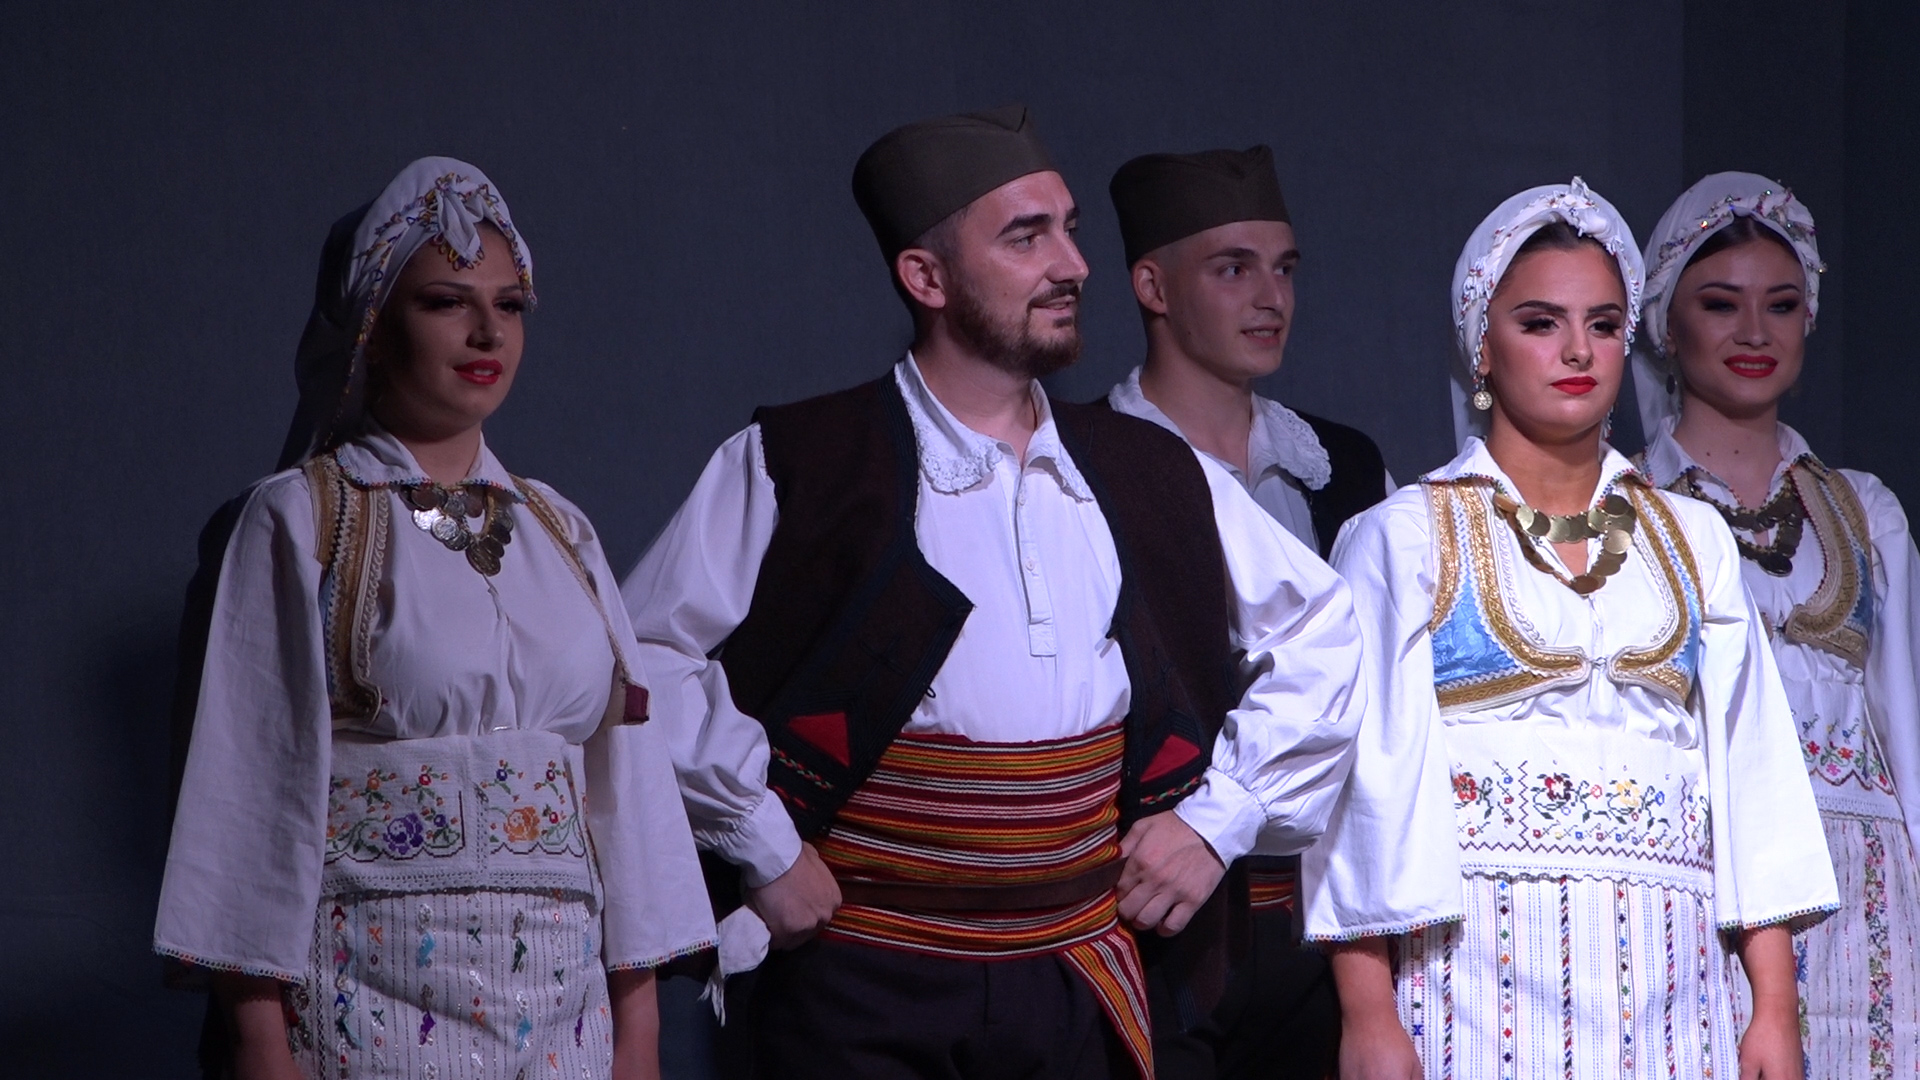 Koncert folkloraša izvođačkog ansambla KUD-a “Spasovdanski vez” oduševio publiku